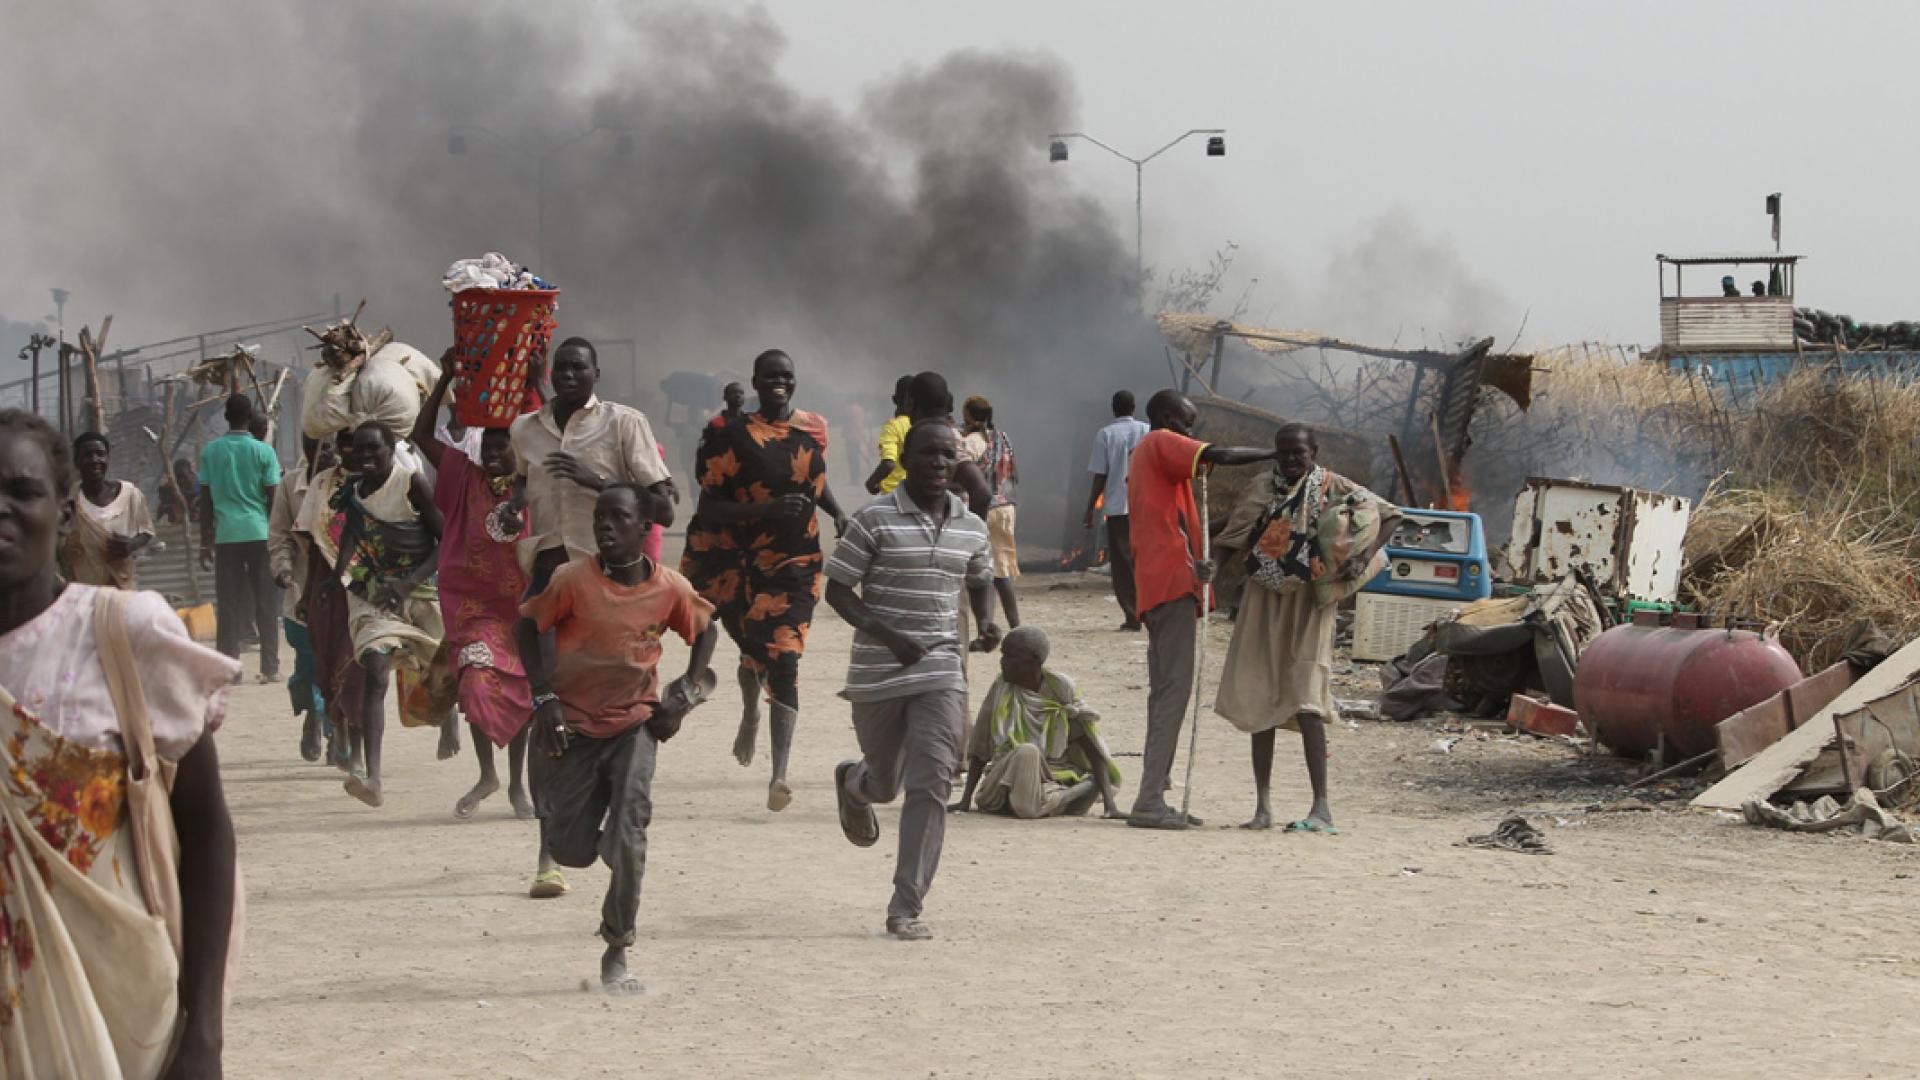 الحرب الأهلية في جنوب السودان شرّدت الملايين وتسببت في مقتل الآلاف